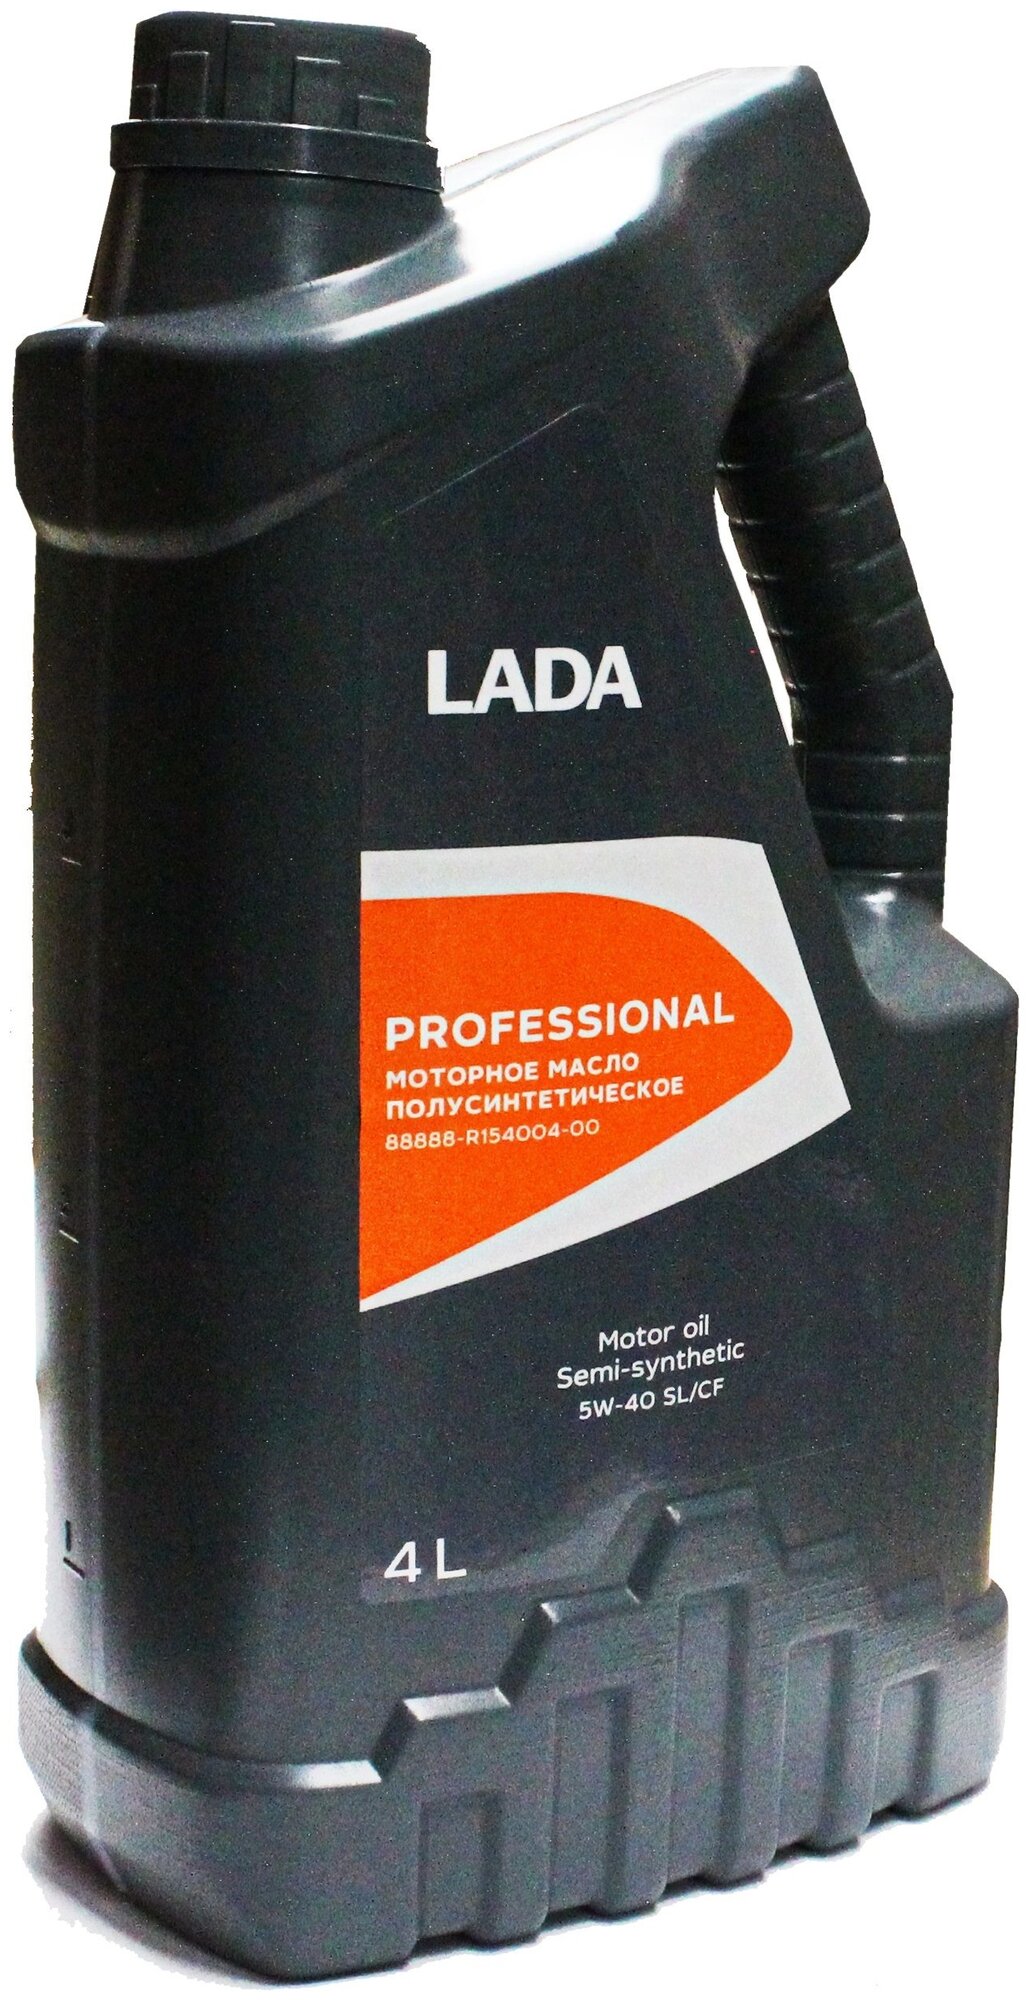 Синтетическое моторное масло LADA Professional 5W-40